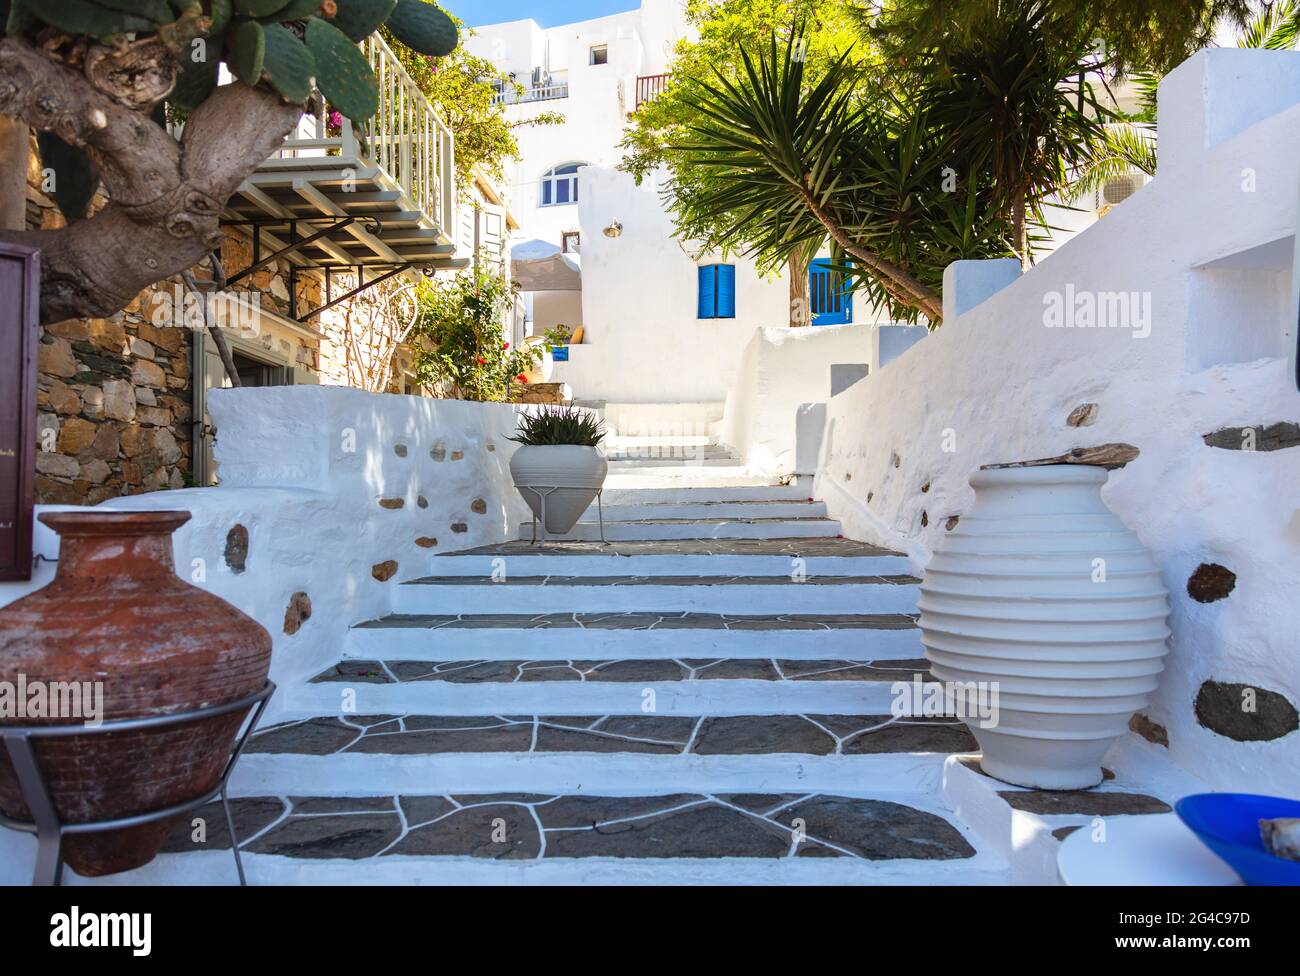 Häuser mit weiß getünchten Wänden Sommer sonnigen Tag auf Sifnos Insel, Griechenland. Alte leere traditionelle schmale Steintreppe von unten zum oberen großen Keramiktopf Stockfoto